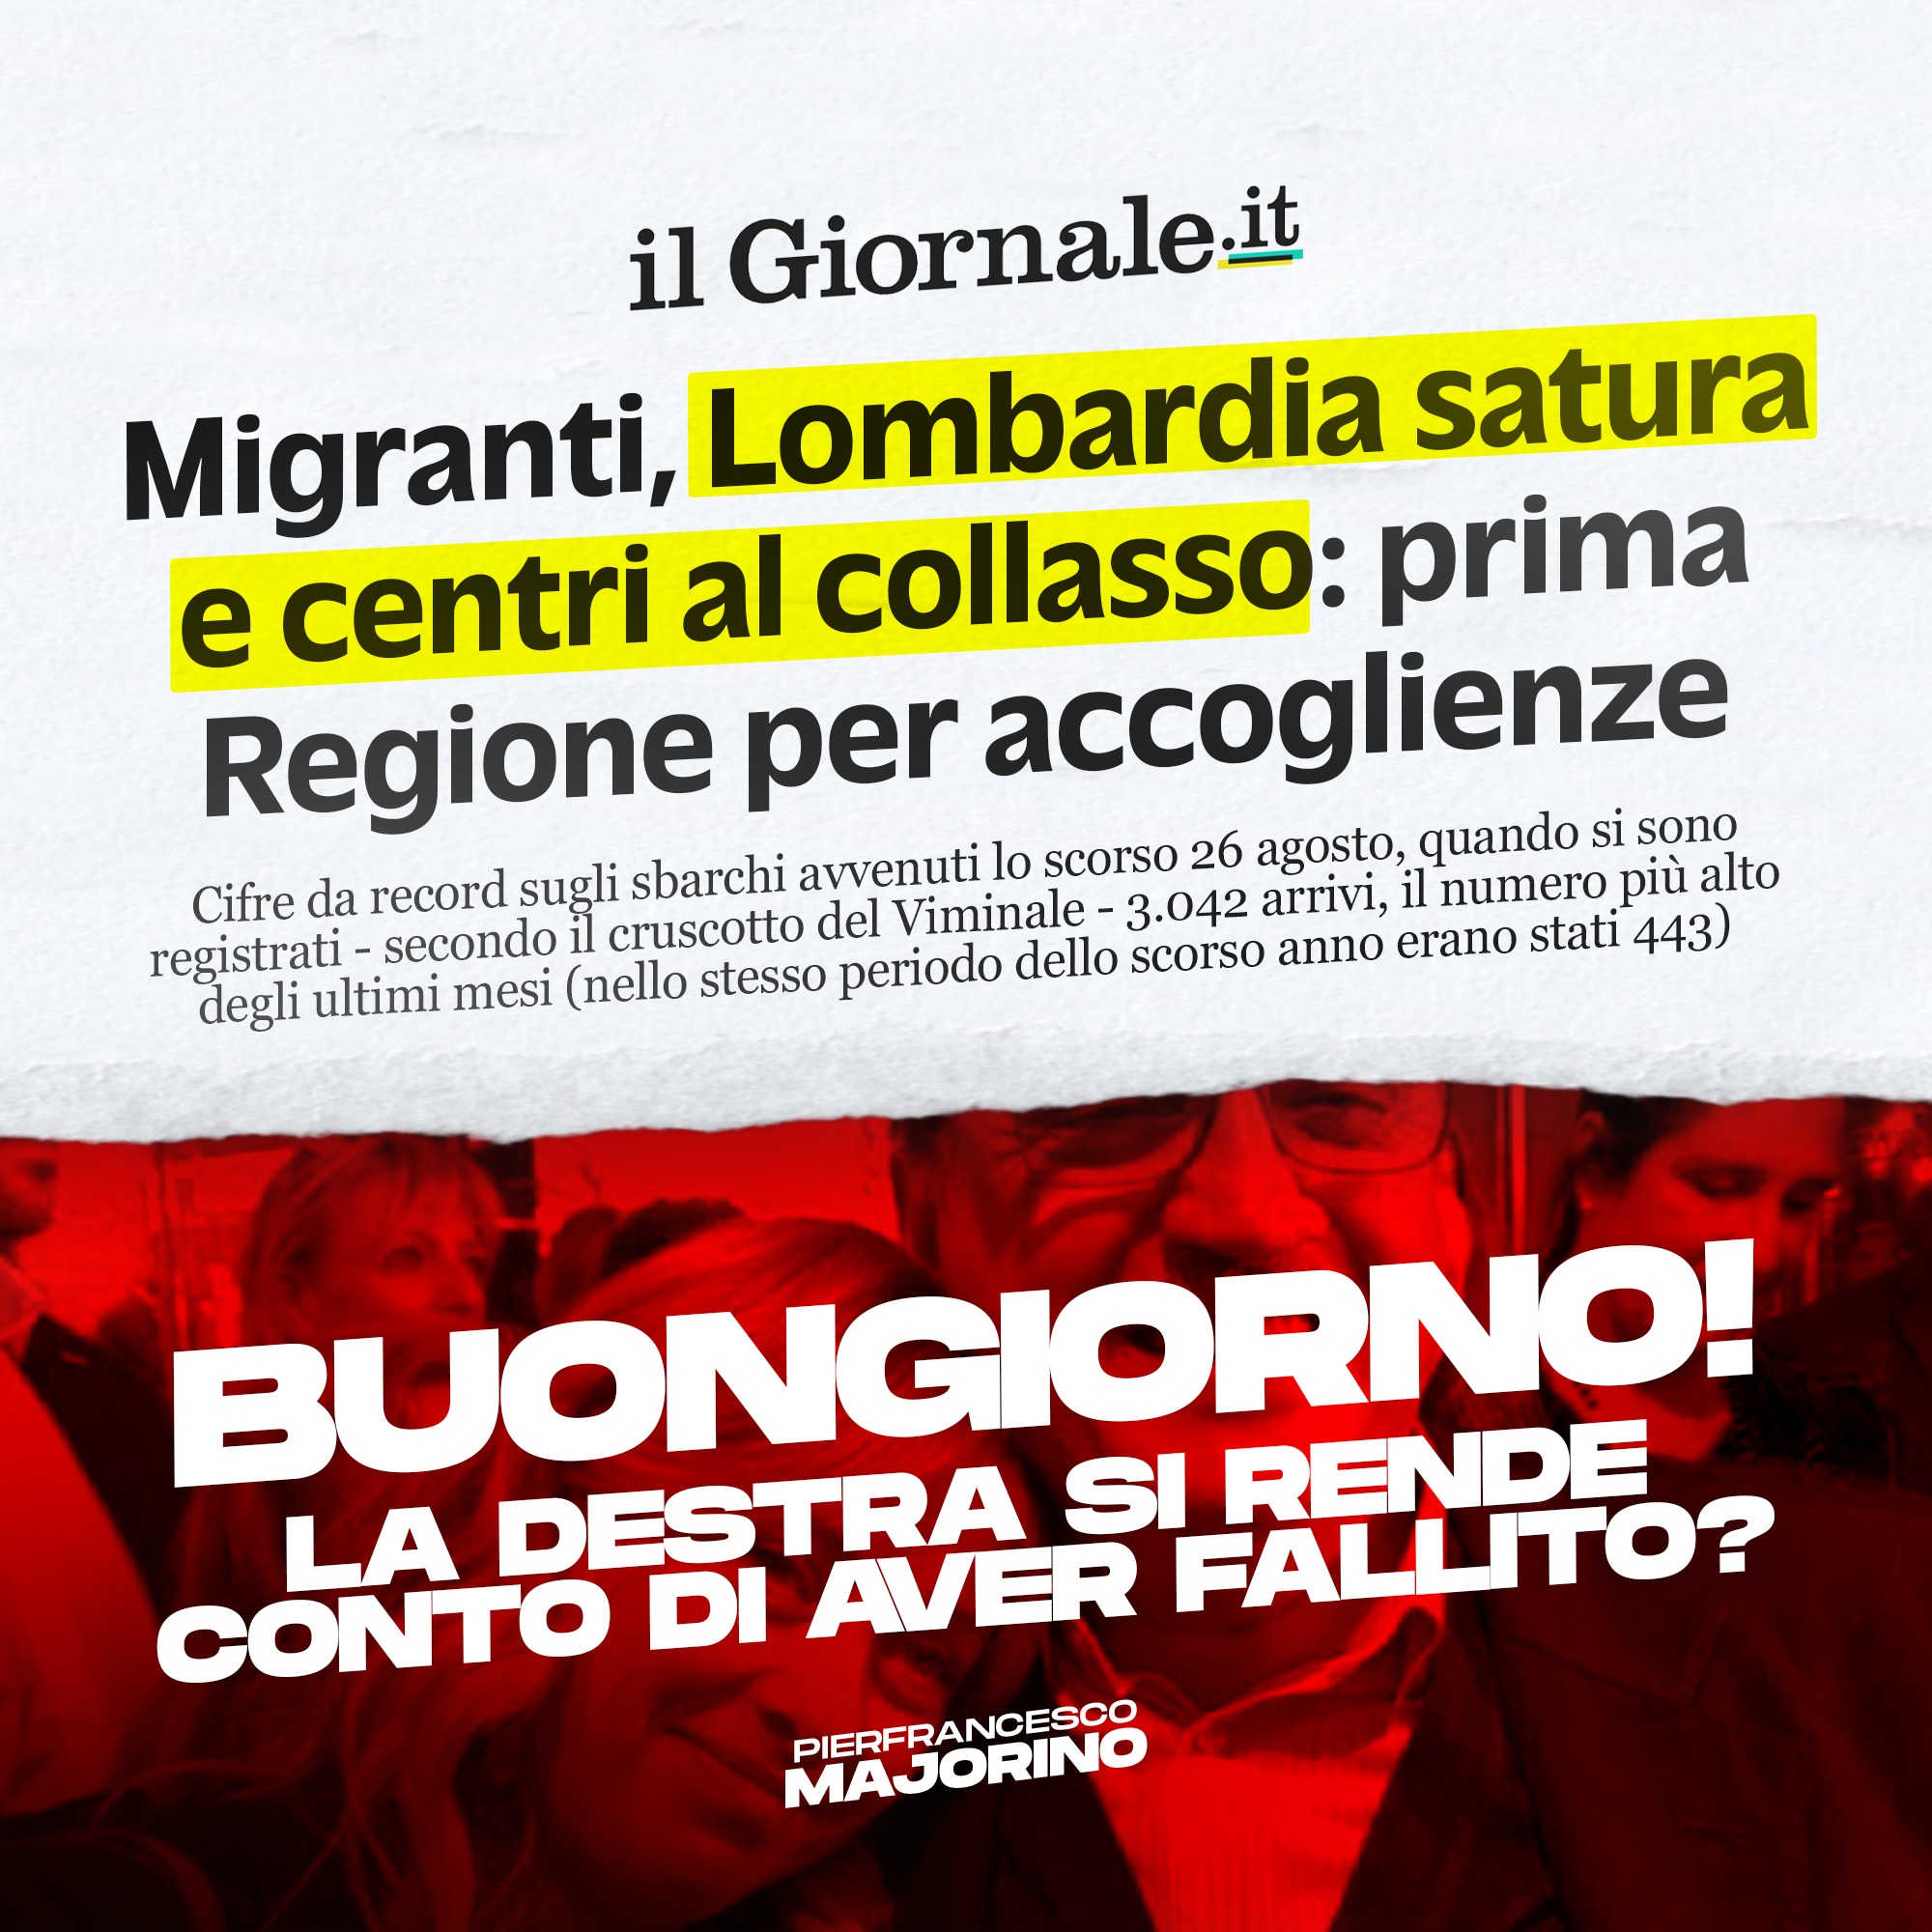 “Migranti, Lombardia al collasso”. La destra ha fallito.